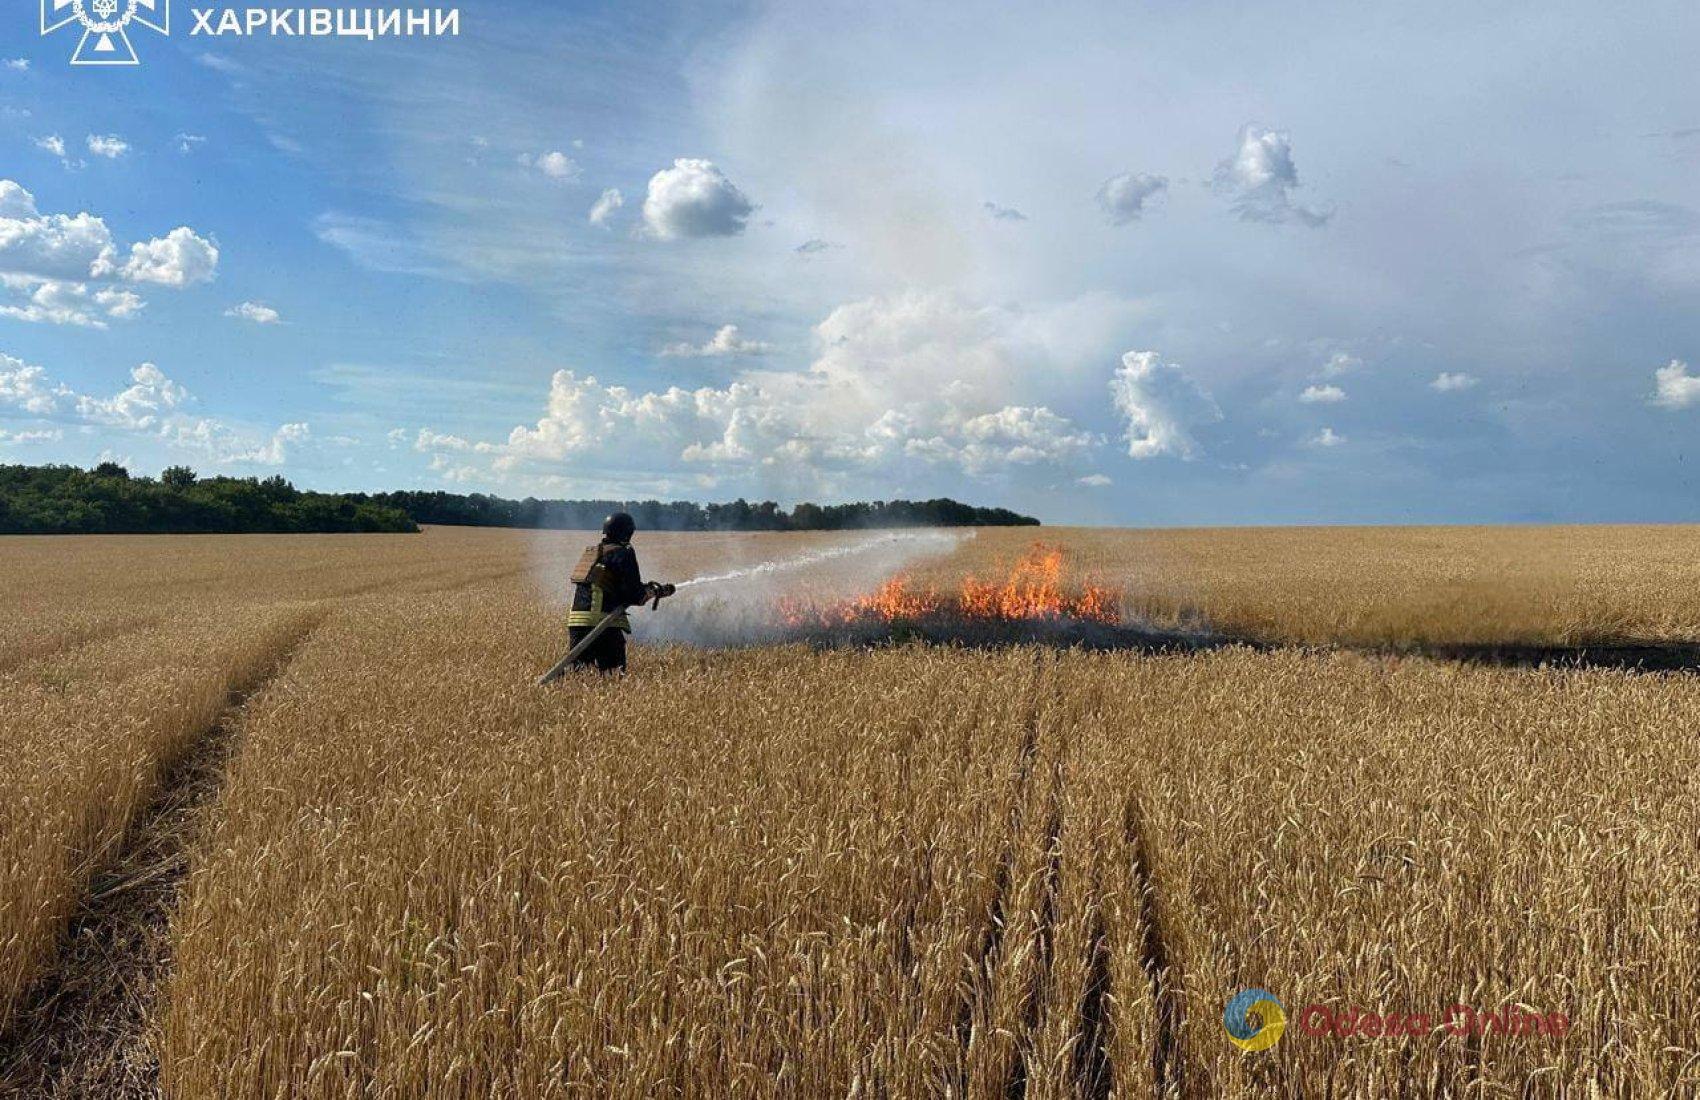 Херсонщина: росіяни б’ють FPV-дронами по полях, щоб спалити урожай фермерів